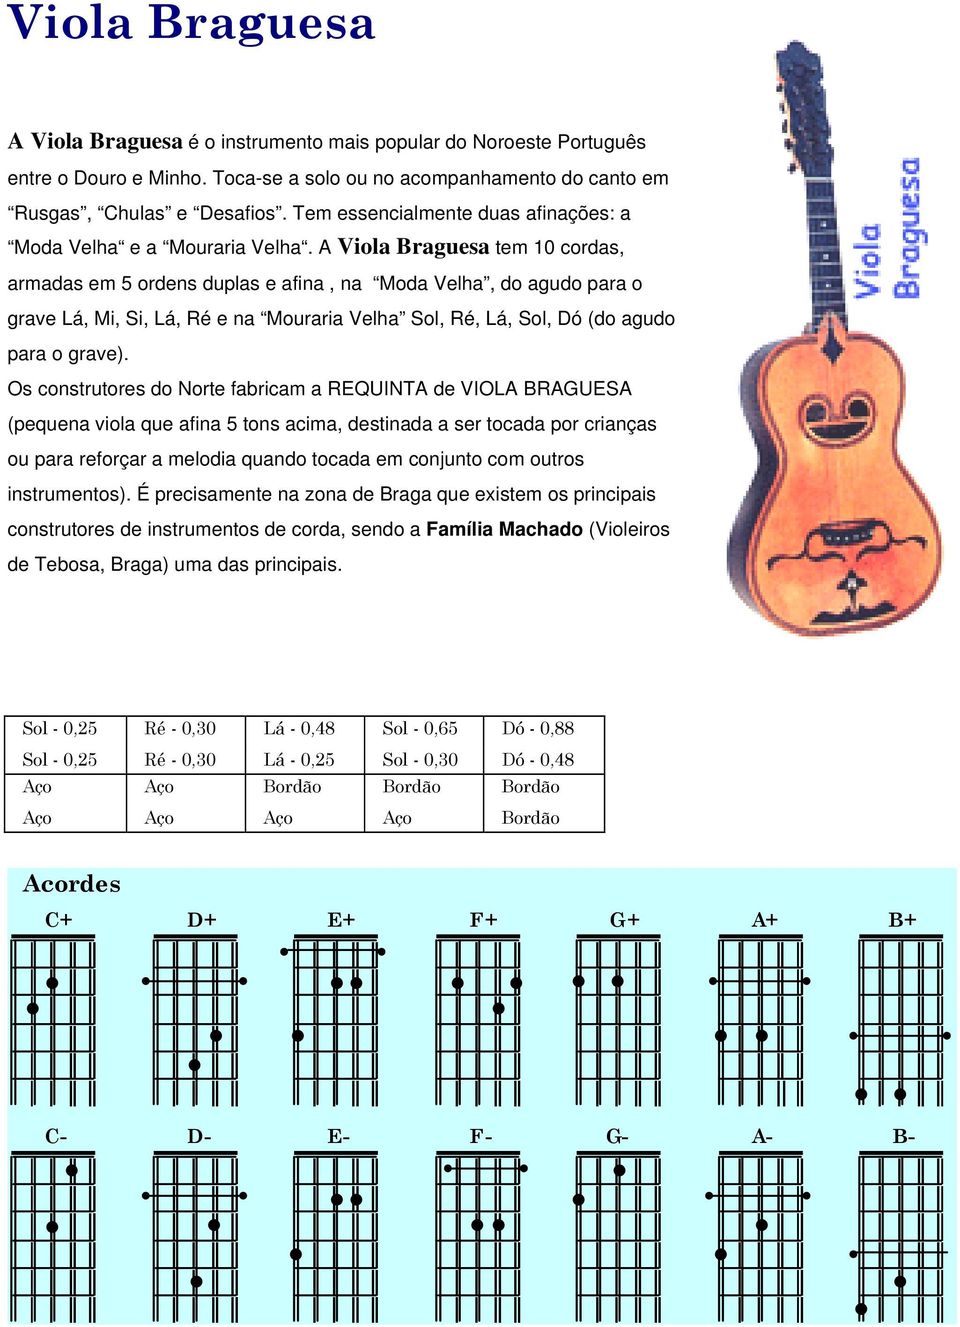 A Viola Braguesa tem 10 cordas, armadas em 5 ordens duplas e afina, na Moda Velha, do agudo para o grave Lá, Mi, Si, Lá, Ré e na Mouraria Velha Sol, Ré, Lá, Sol, Dó (do agudo para o grave).